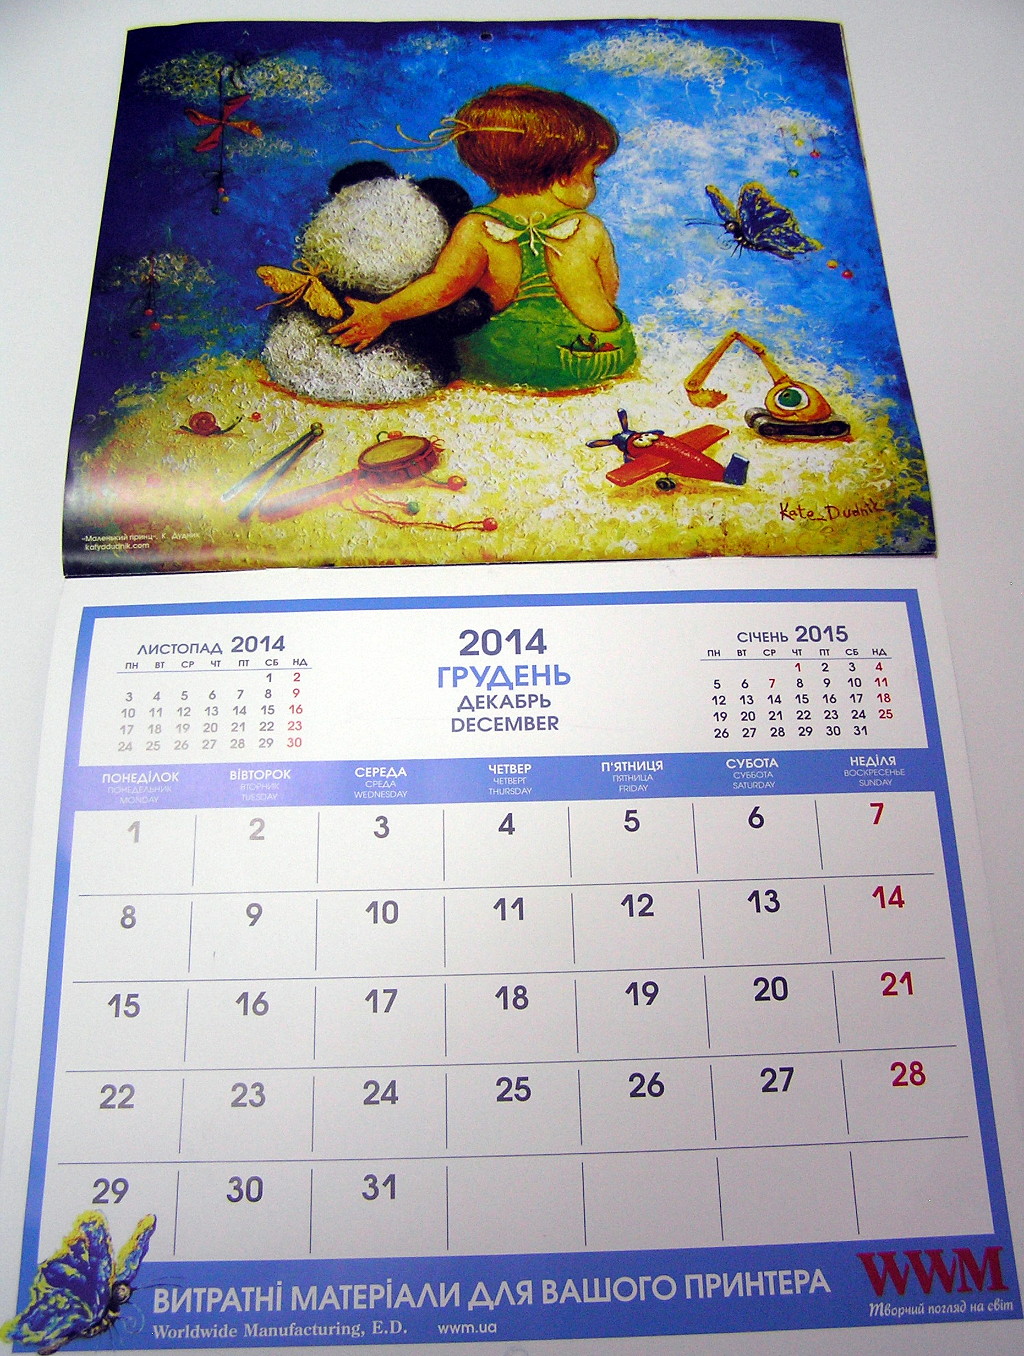 Виготовлення настінних календарів «Творчий погляд на світ із Катериною Дудник». Поліграфія друкарні Макрос, друк настінних календарів, спецификация 968994-4